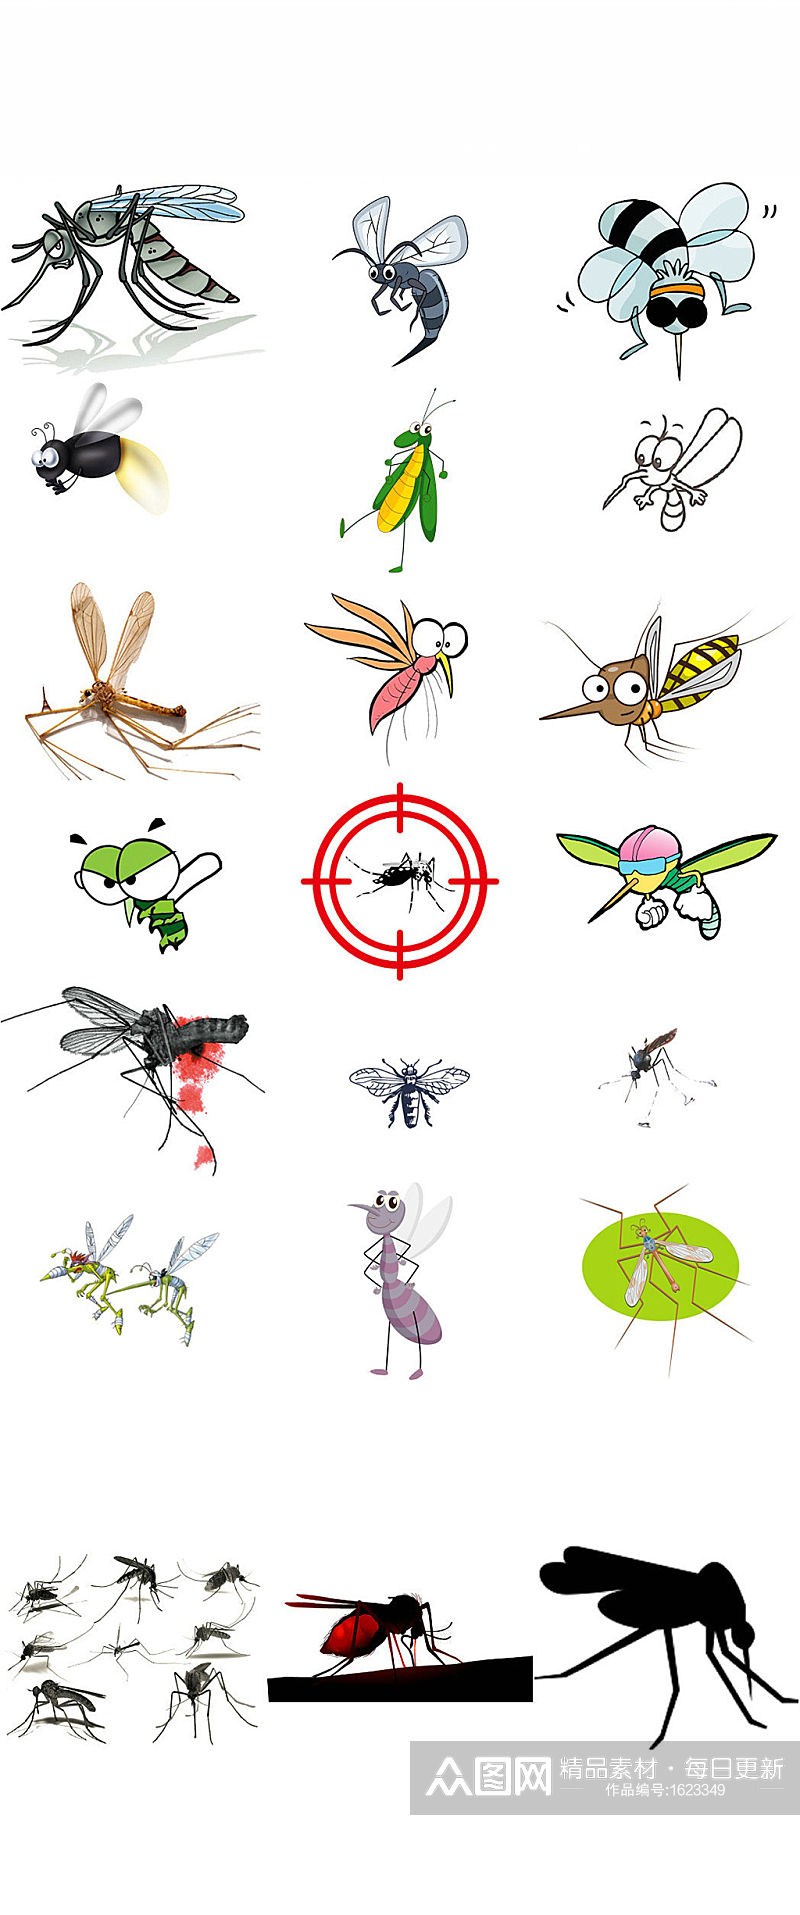 蚊子卡通设计海报素材素材